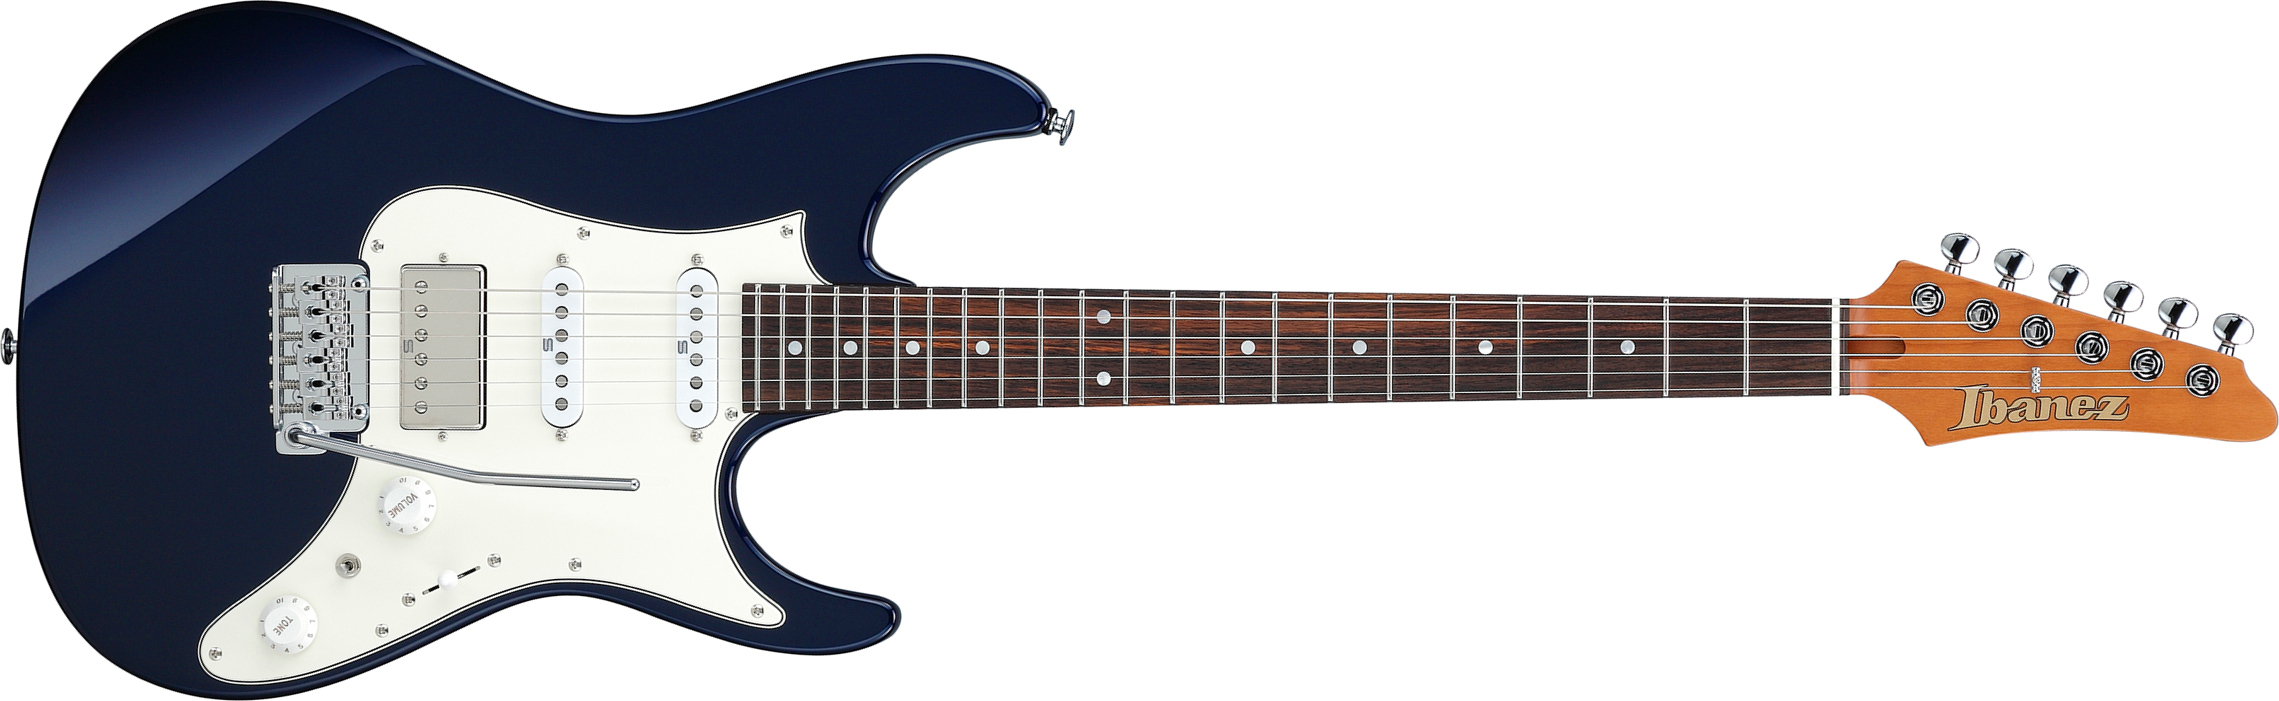 Ibanez Az2204nw Dtb Prestige Jap Hss Seymour Duncan Trem Rw - Dark Tide Blue - Str shape electric guitar - Main picture